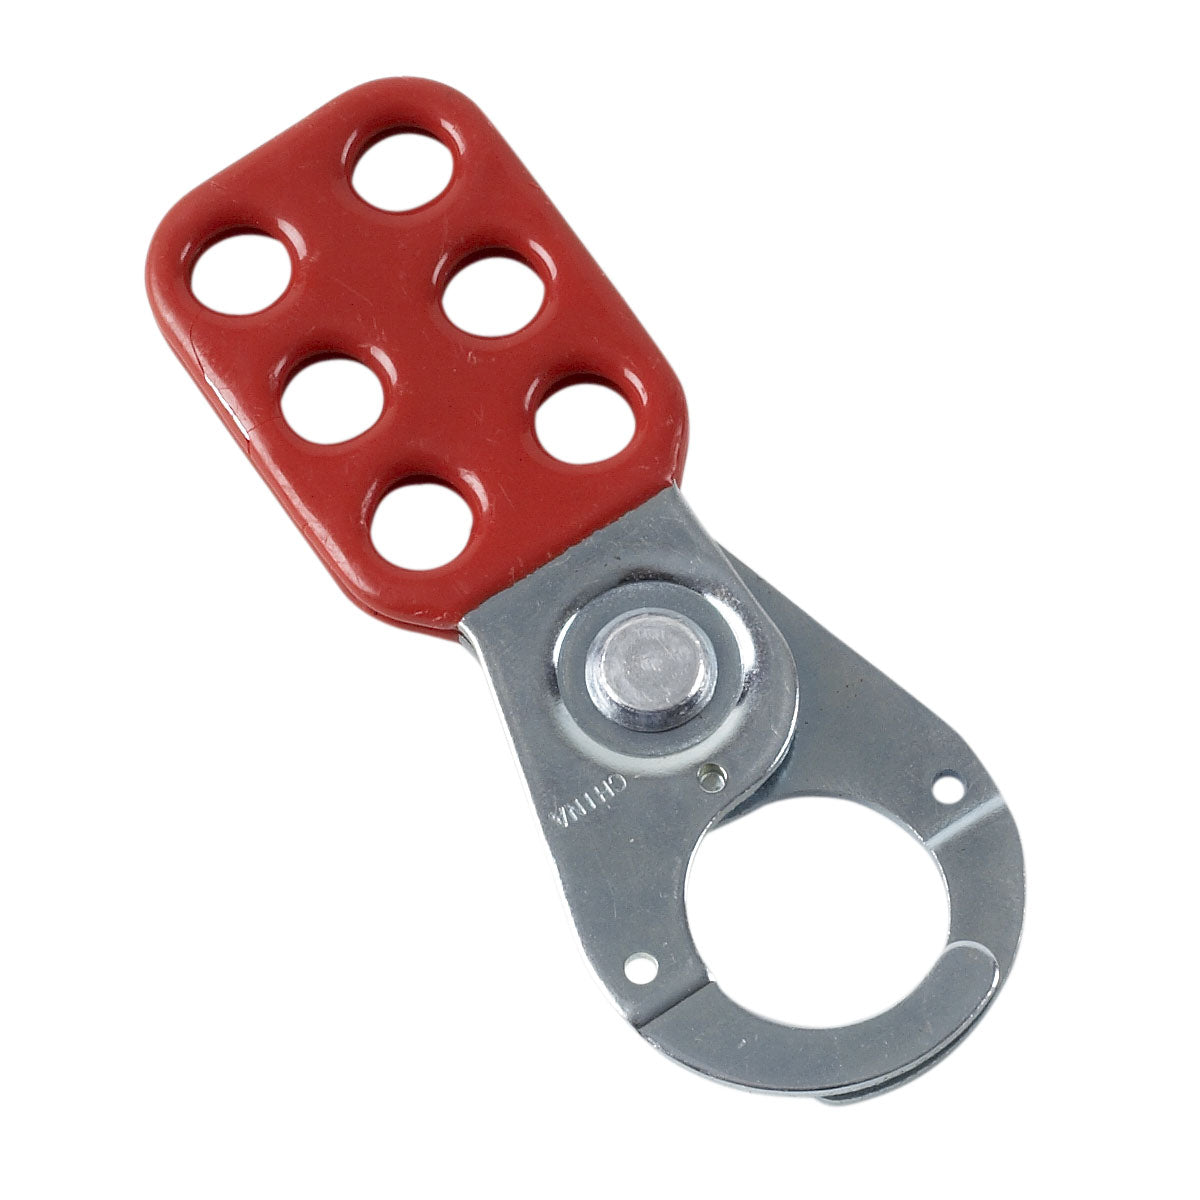 133161 | Dispositivo de bloqueo para multicandados de metal, color rojo. (Unidad)